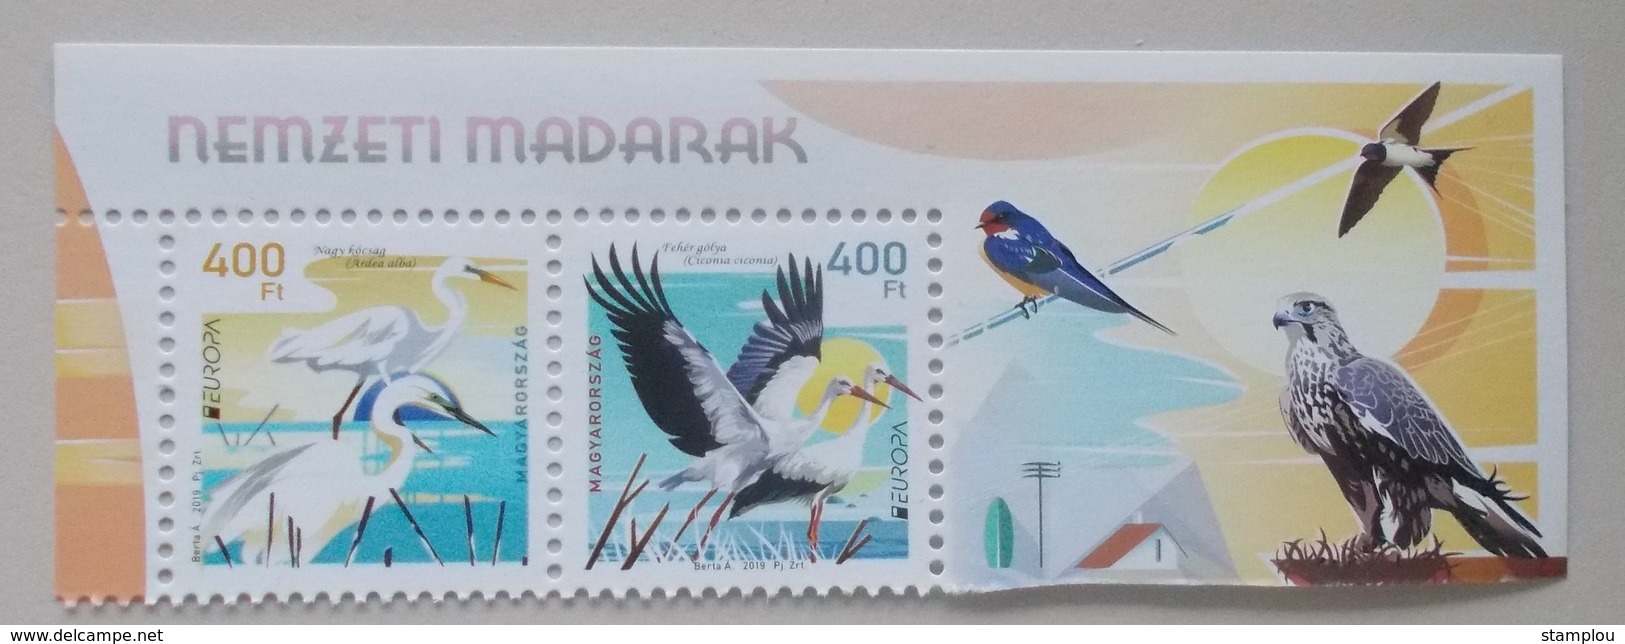 Hongarije-Hungary 2019 Cept  PF 2 Stamps - 2019